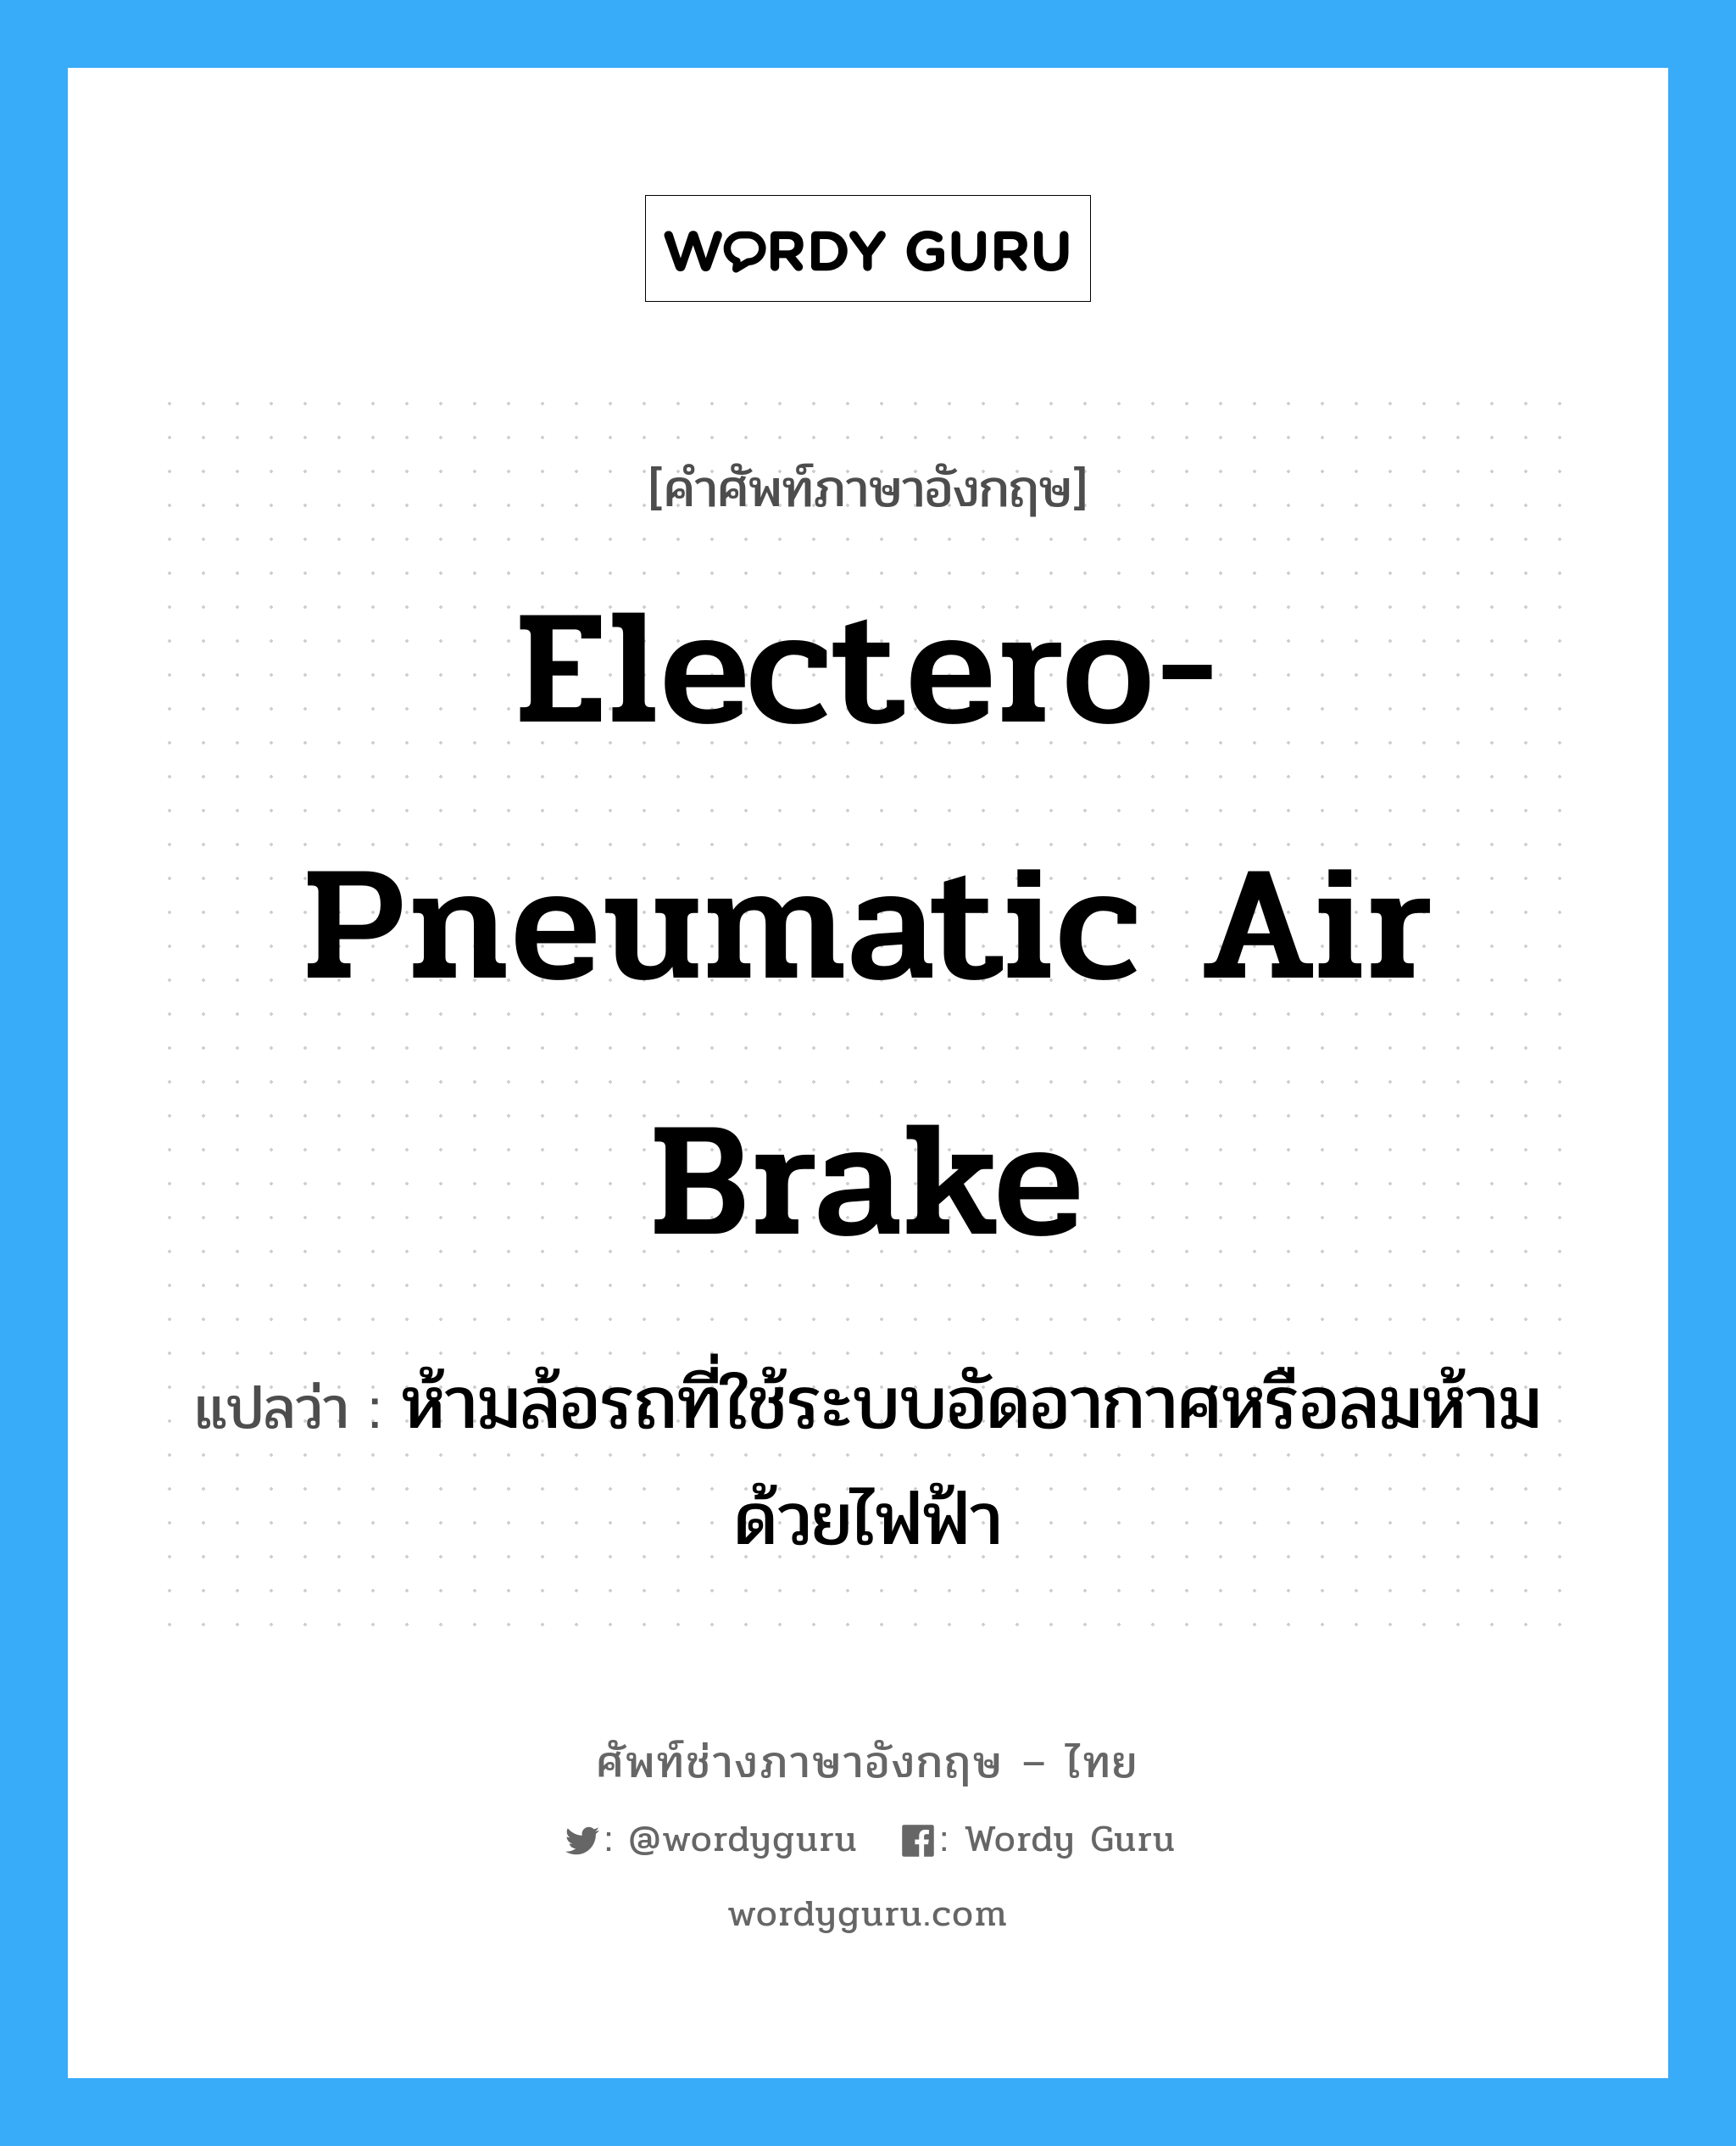 electero-pneumatic air brake แปลว่า?, คำศัพท์ช่างภาษาอังกฤษ - ไทย electero-pneumatic air brake คำศัพท์ภาษาอังกฤษ electero-pneumatic air brake แปลว่า ห้ามล้อรถที่ใช้ระบบอัดอากาศหรือลมห้ามด้วยไฟฟ้า